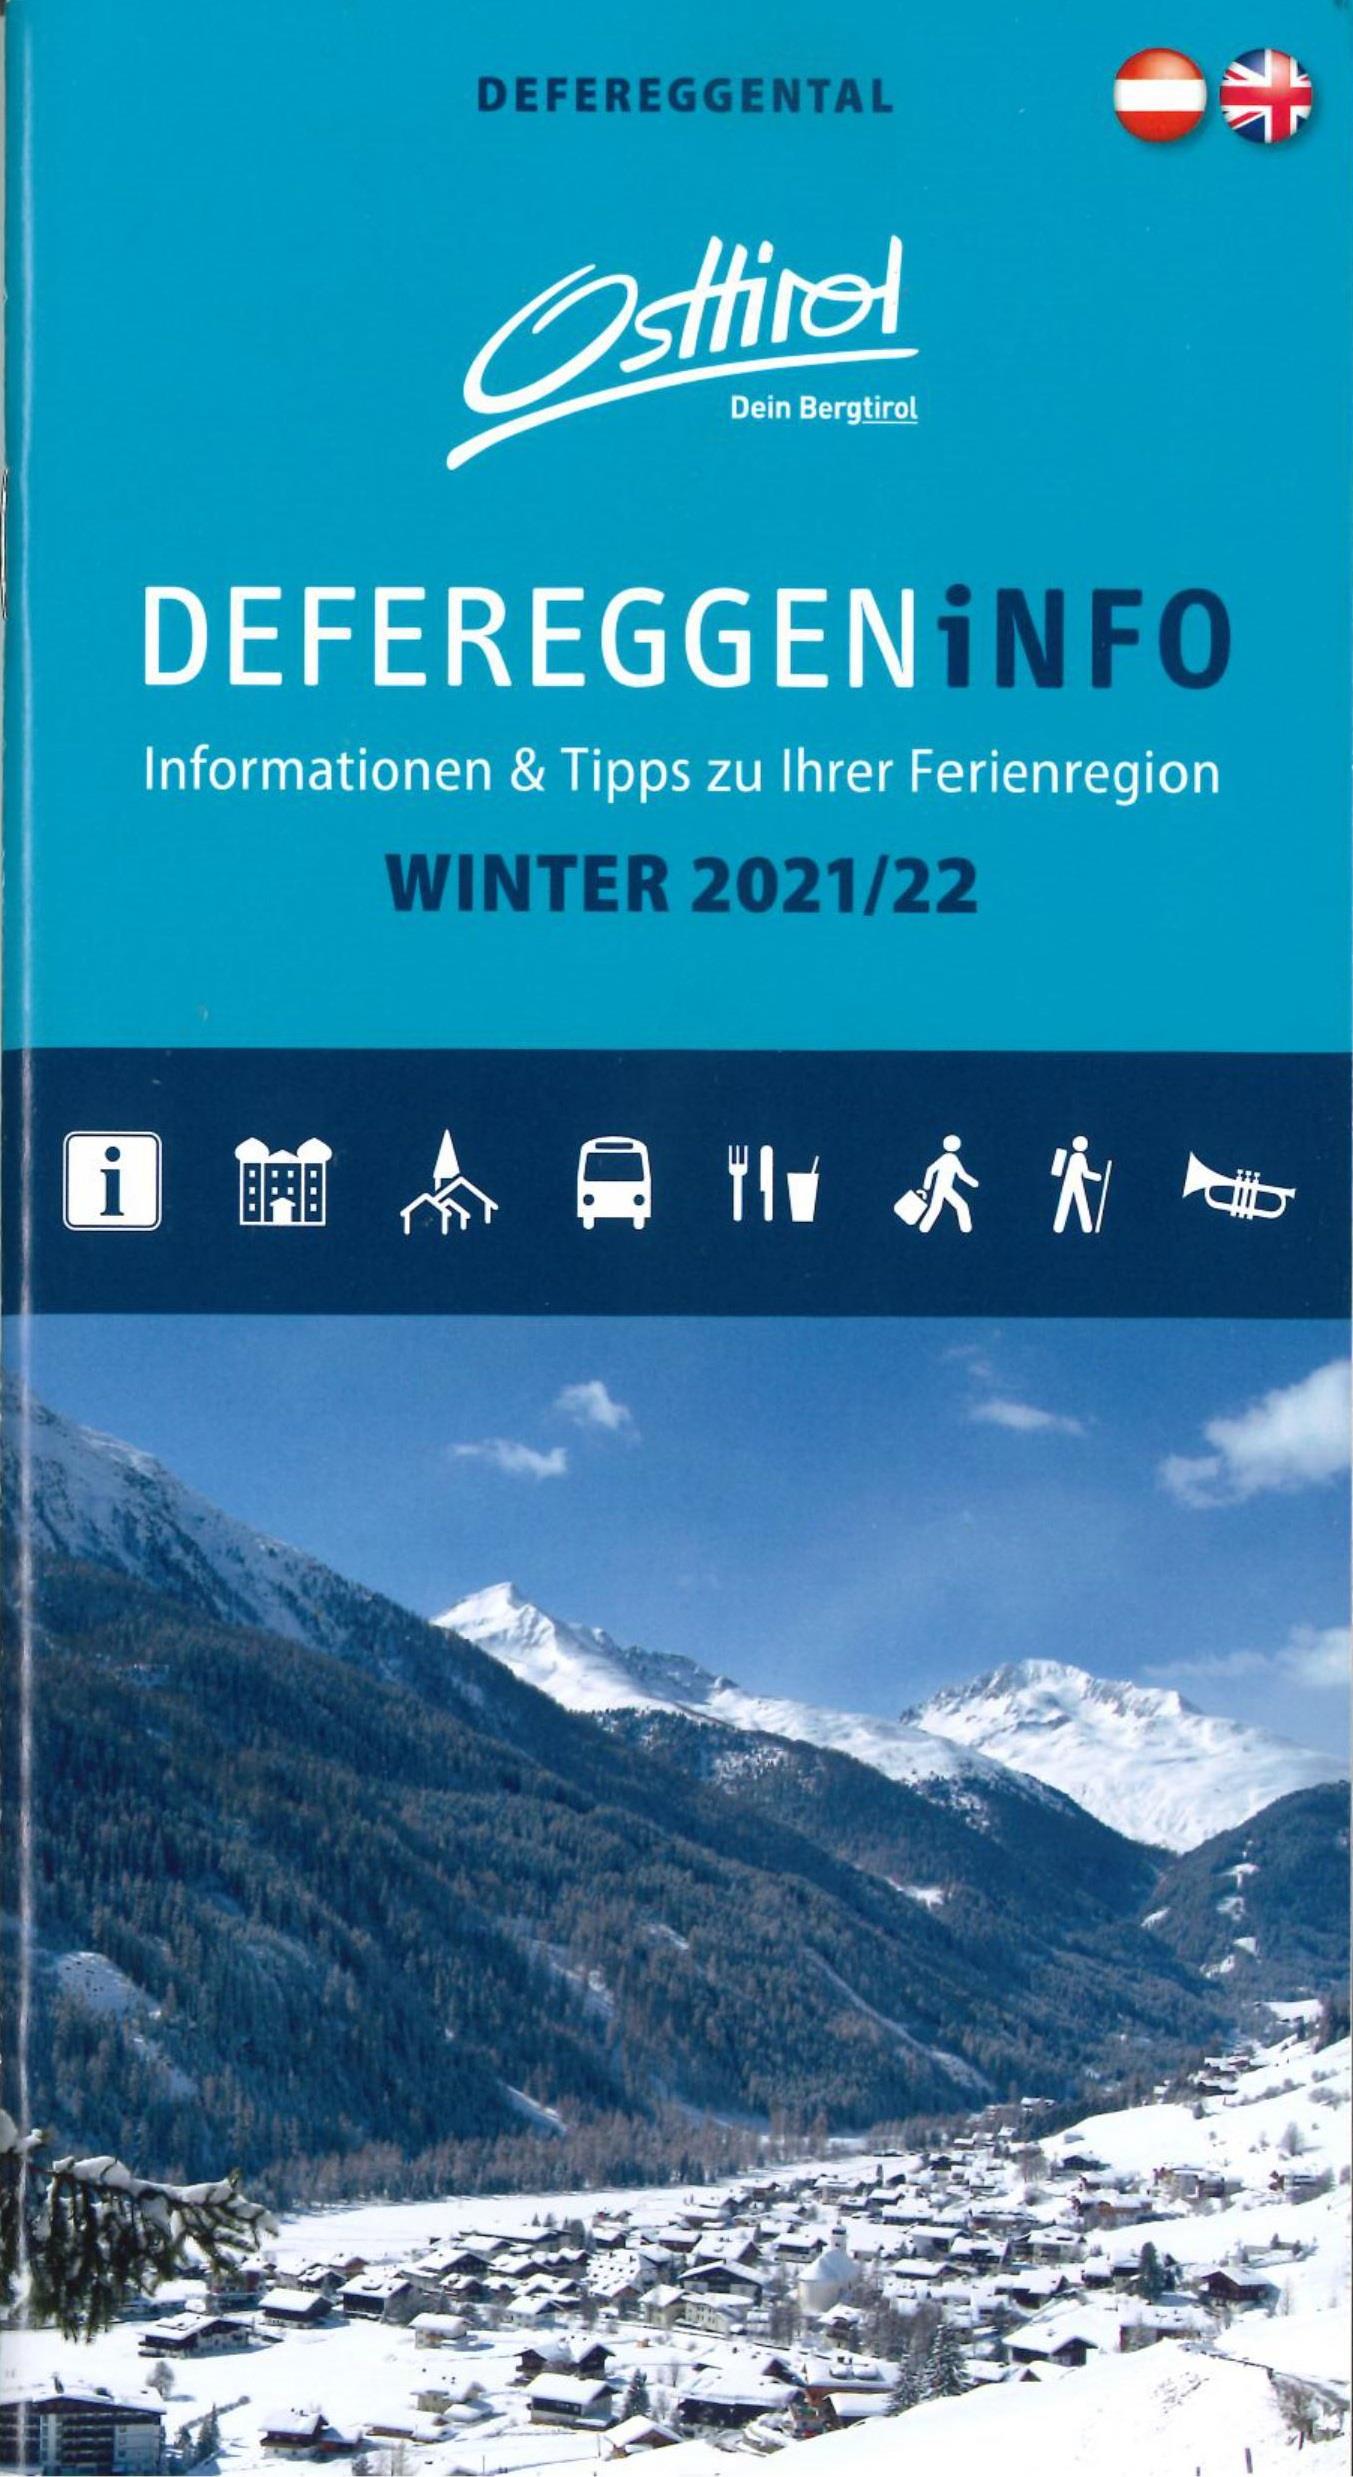 Defereggeninfo-Winter-2021-22.jpg